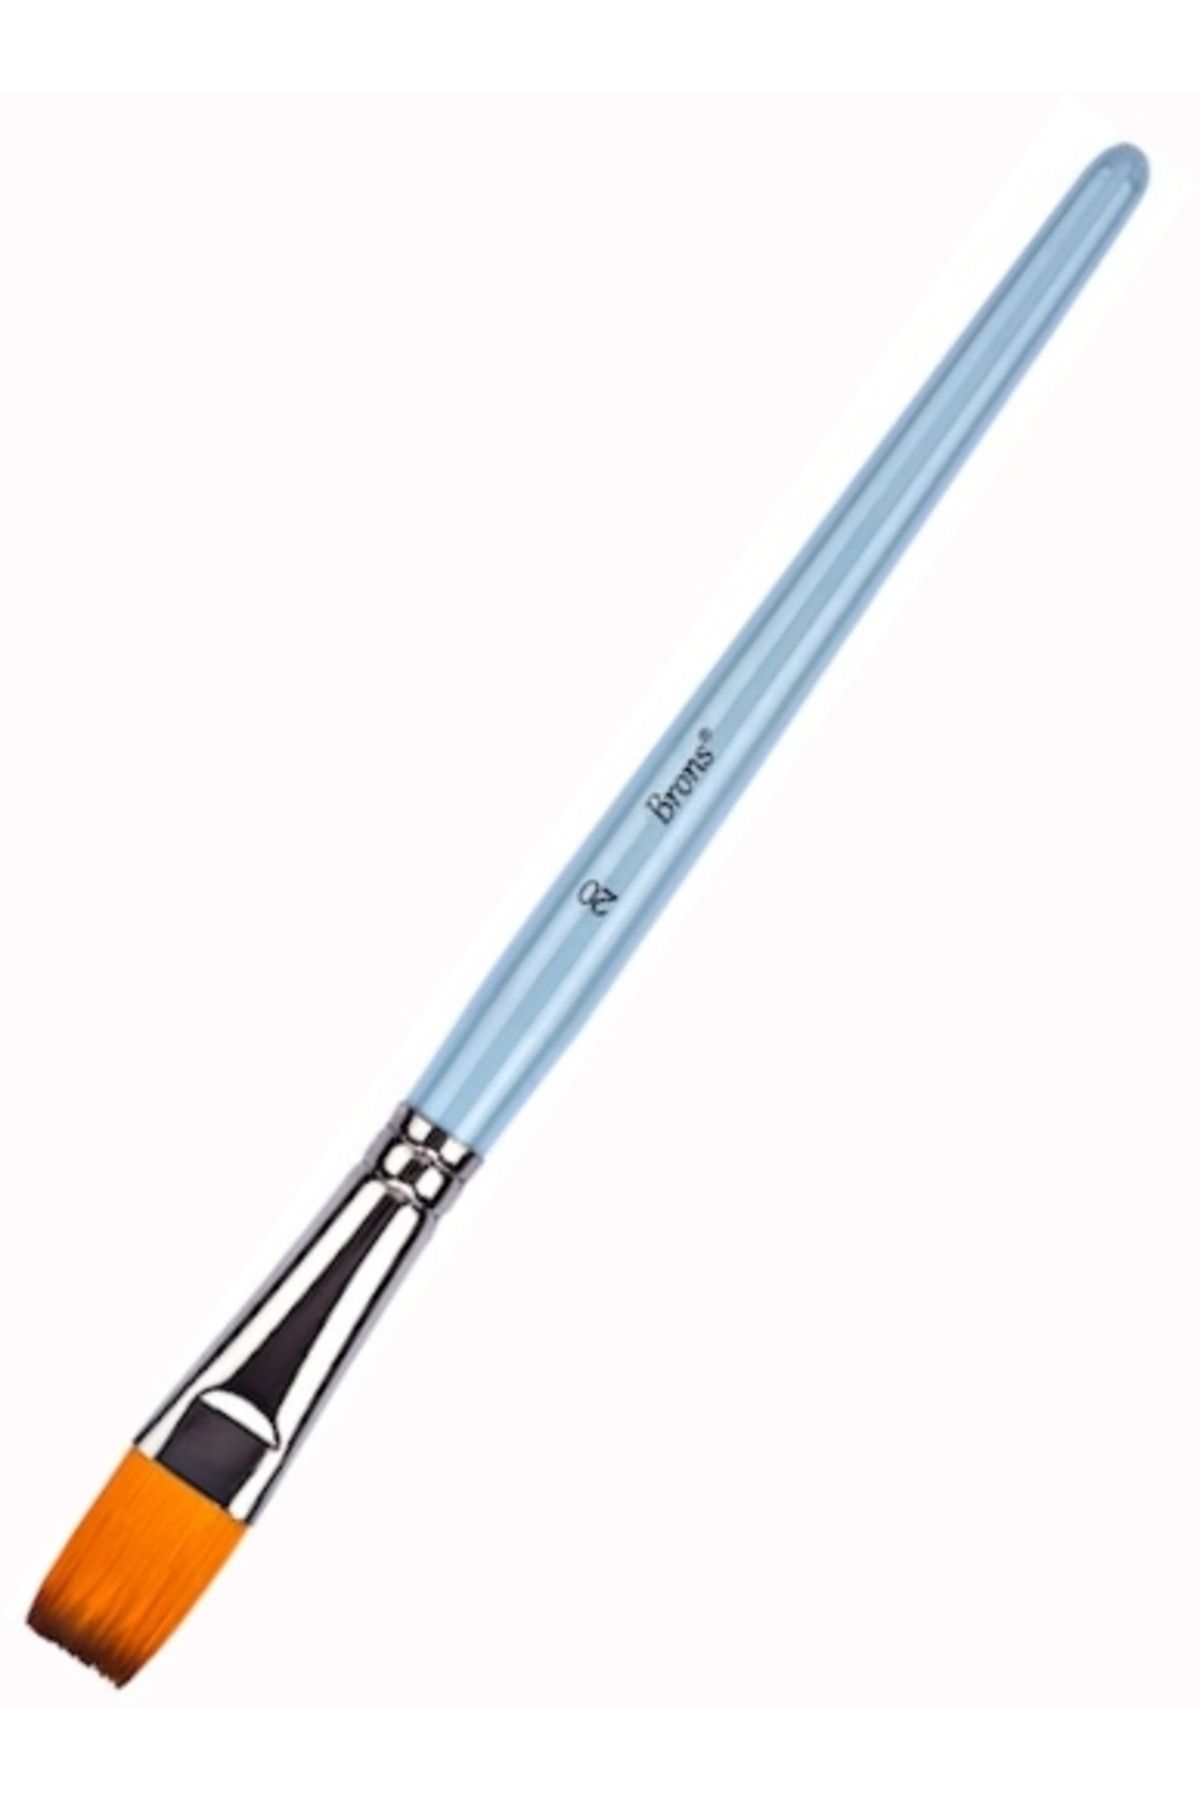 Brons 200f Serisi Sentetik Yağlı Ve Akrilik Boya Fırçası/model-11